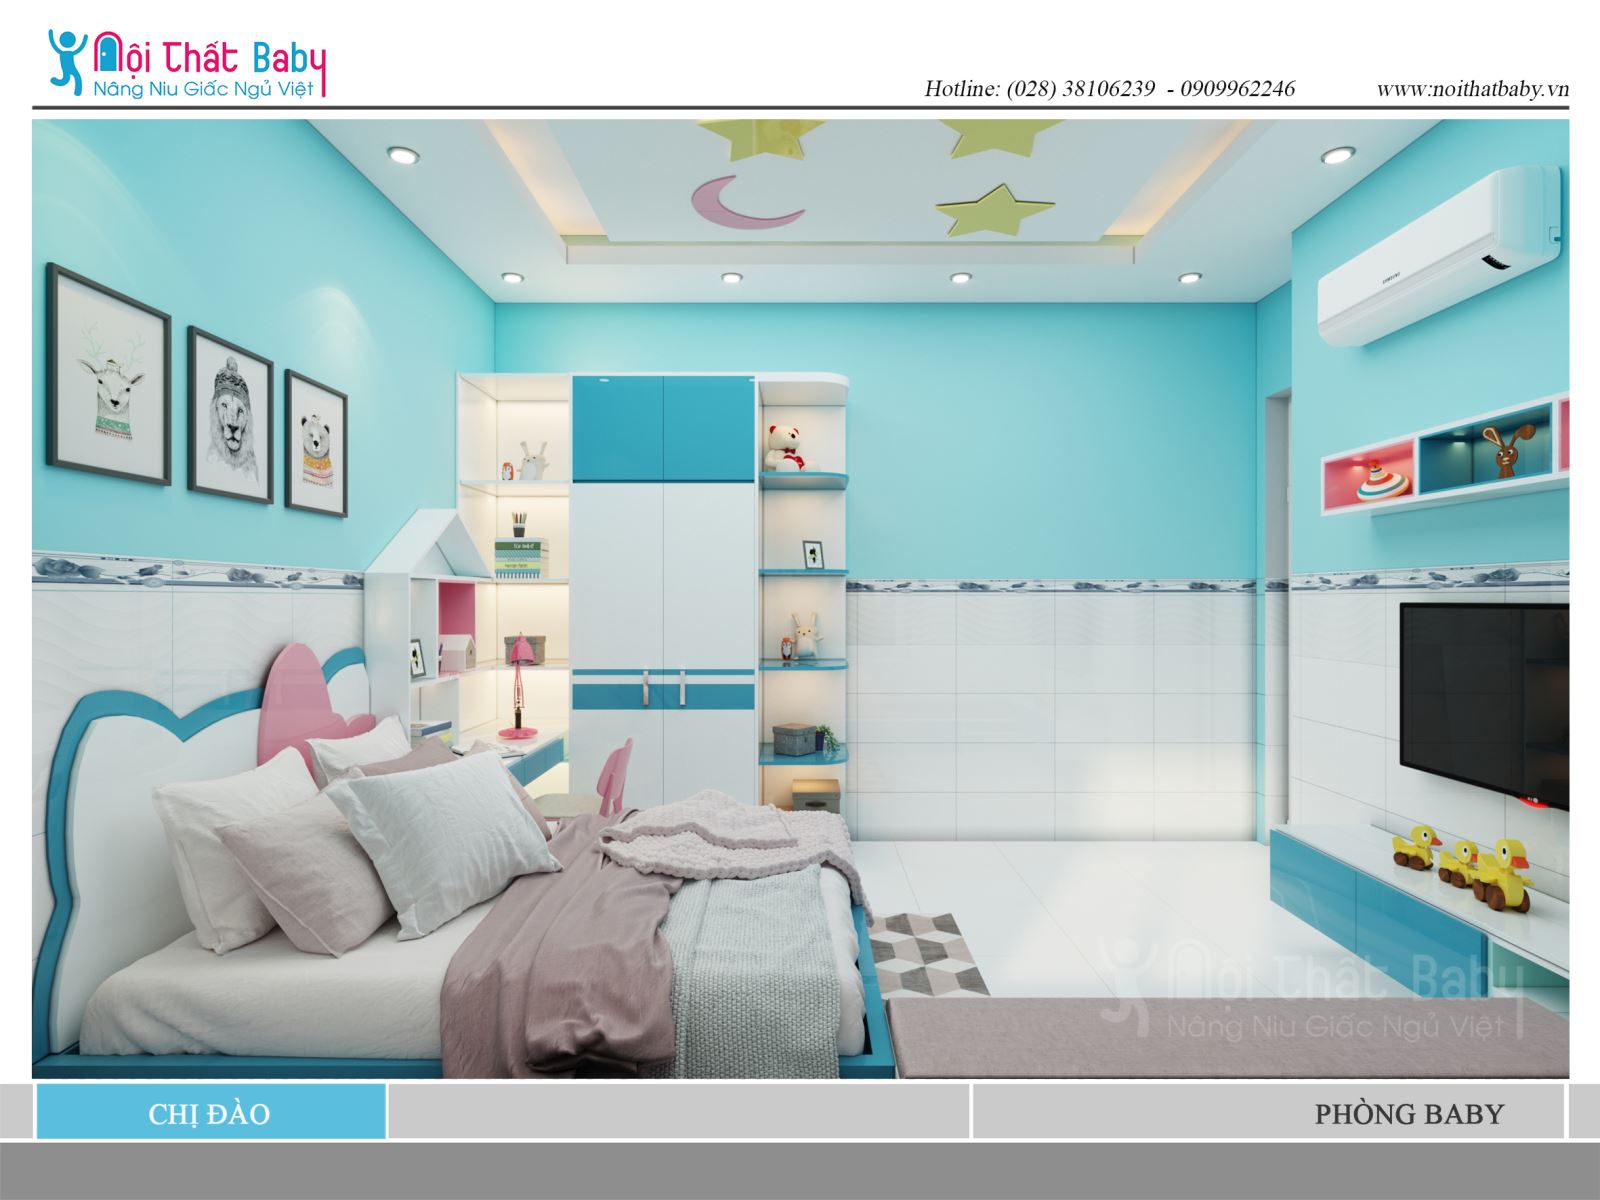 Mẫu thiết kế phòng ngủ bé gái đẹp với màu xanh nhà chị Đào